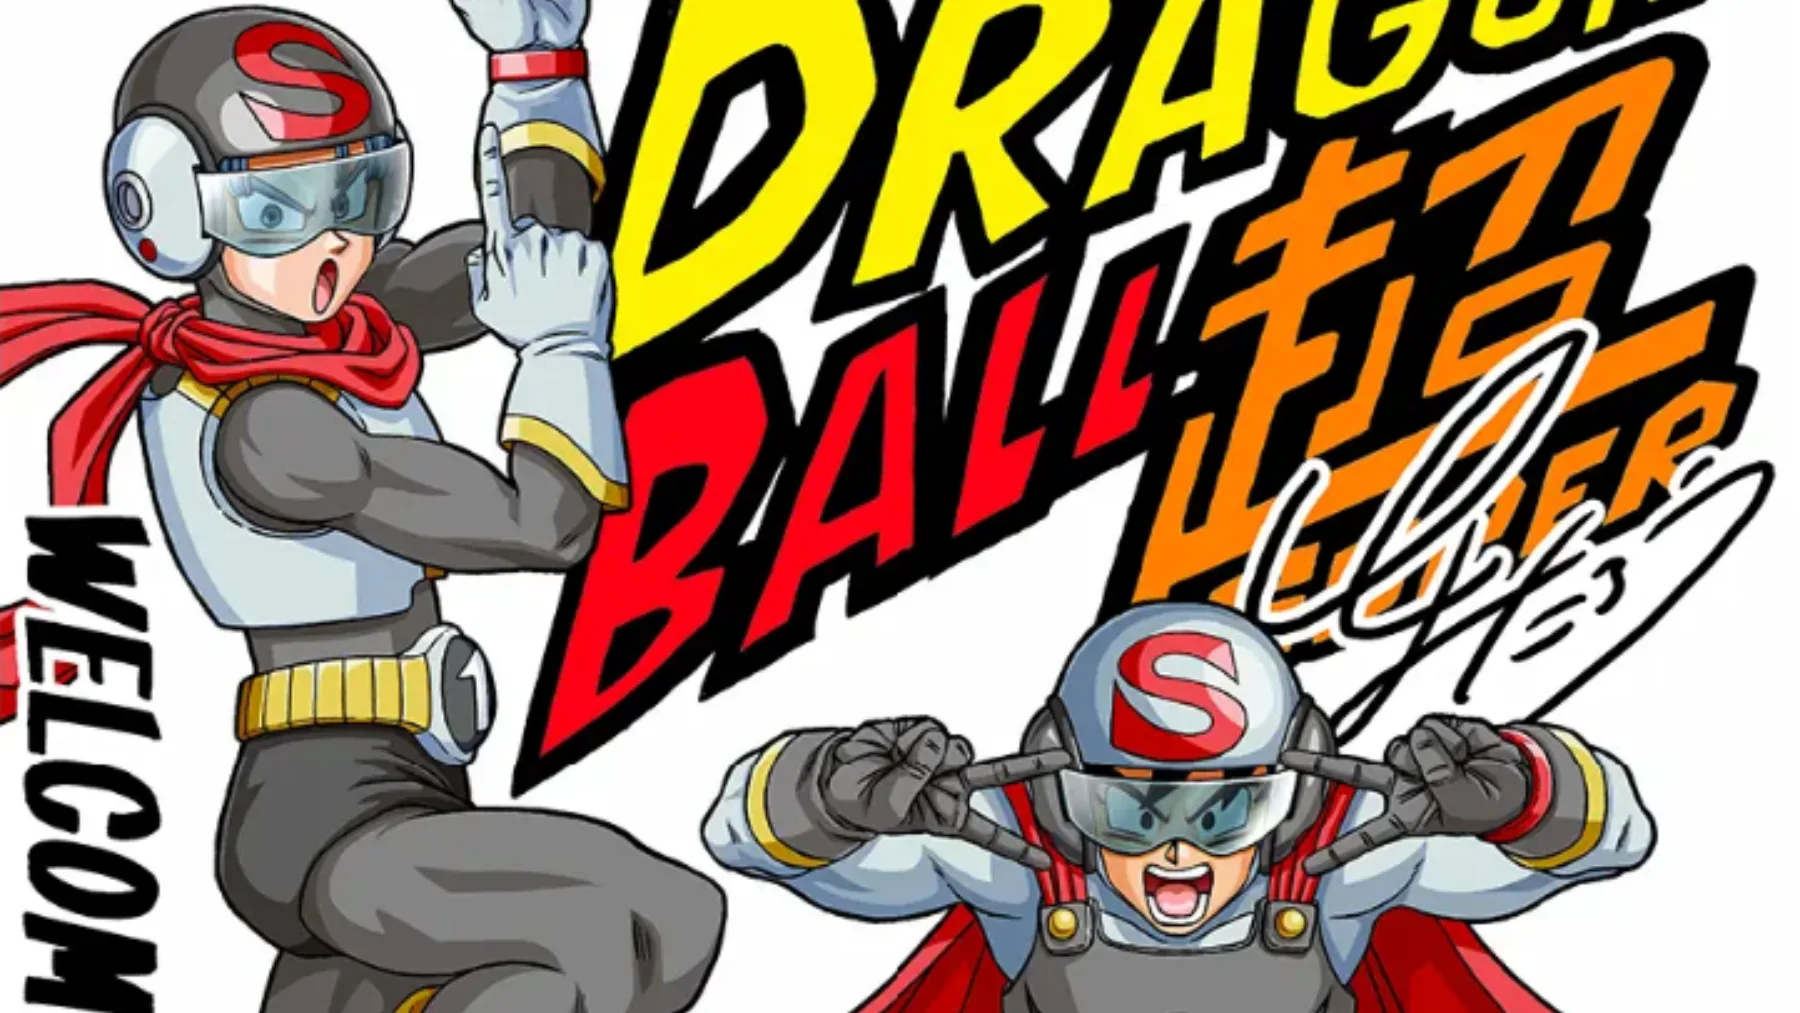 Dragon Ball Super manga 88 en español completo por manga plus: leer el capítulo  88 de DBS ONLINE Y GRATIS, Animes